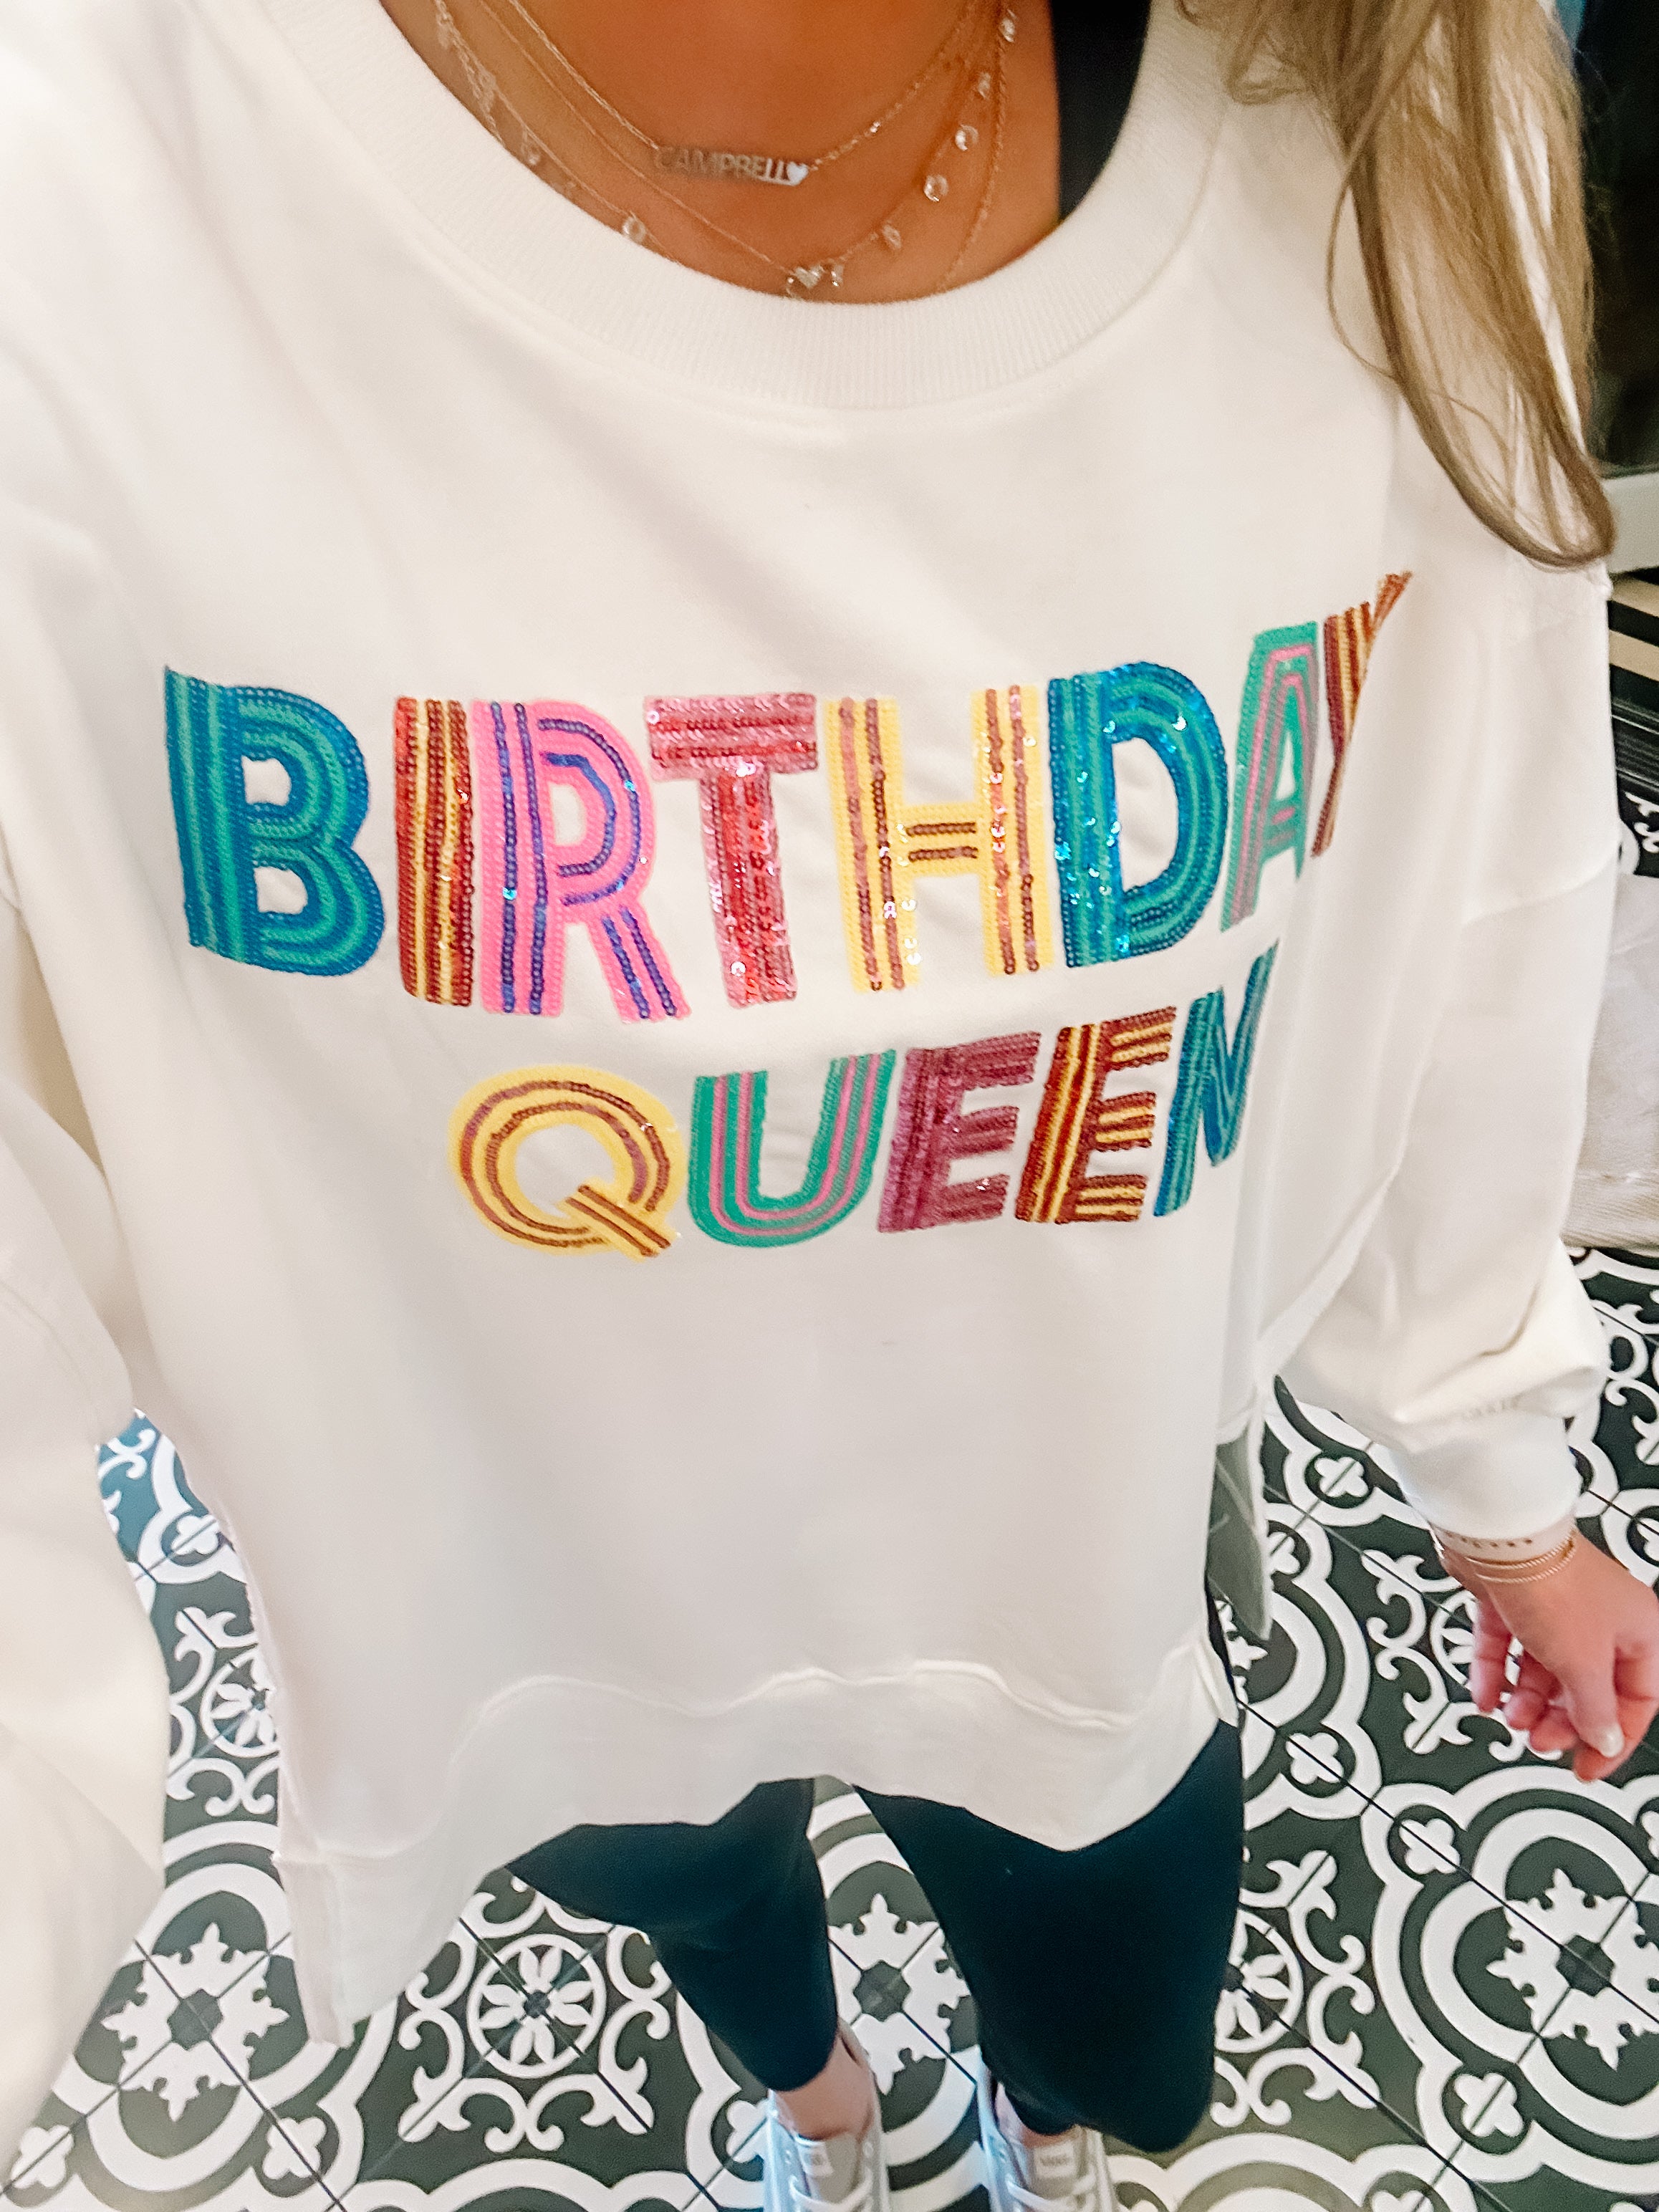 Birthday queen top